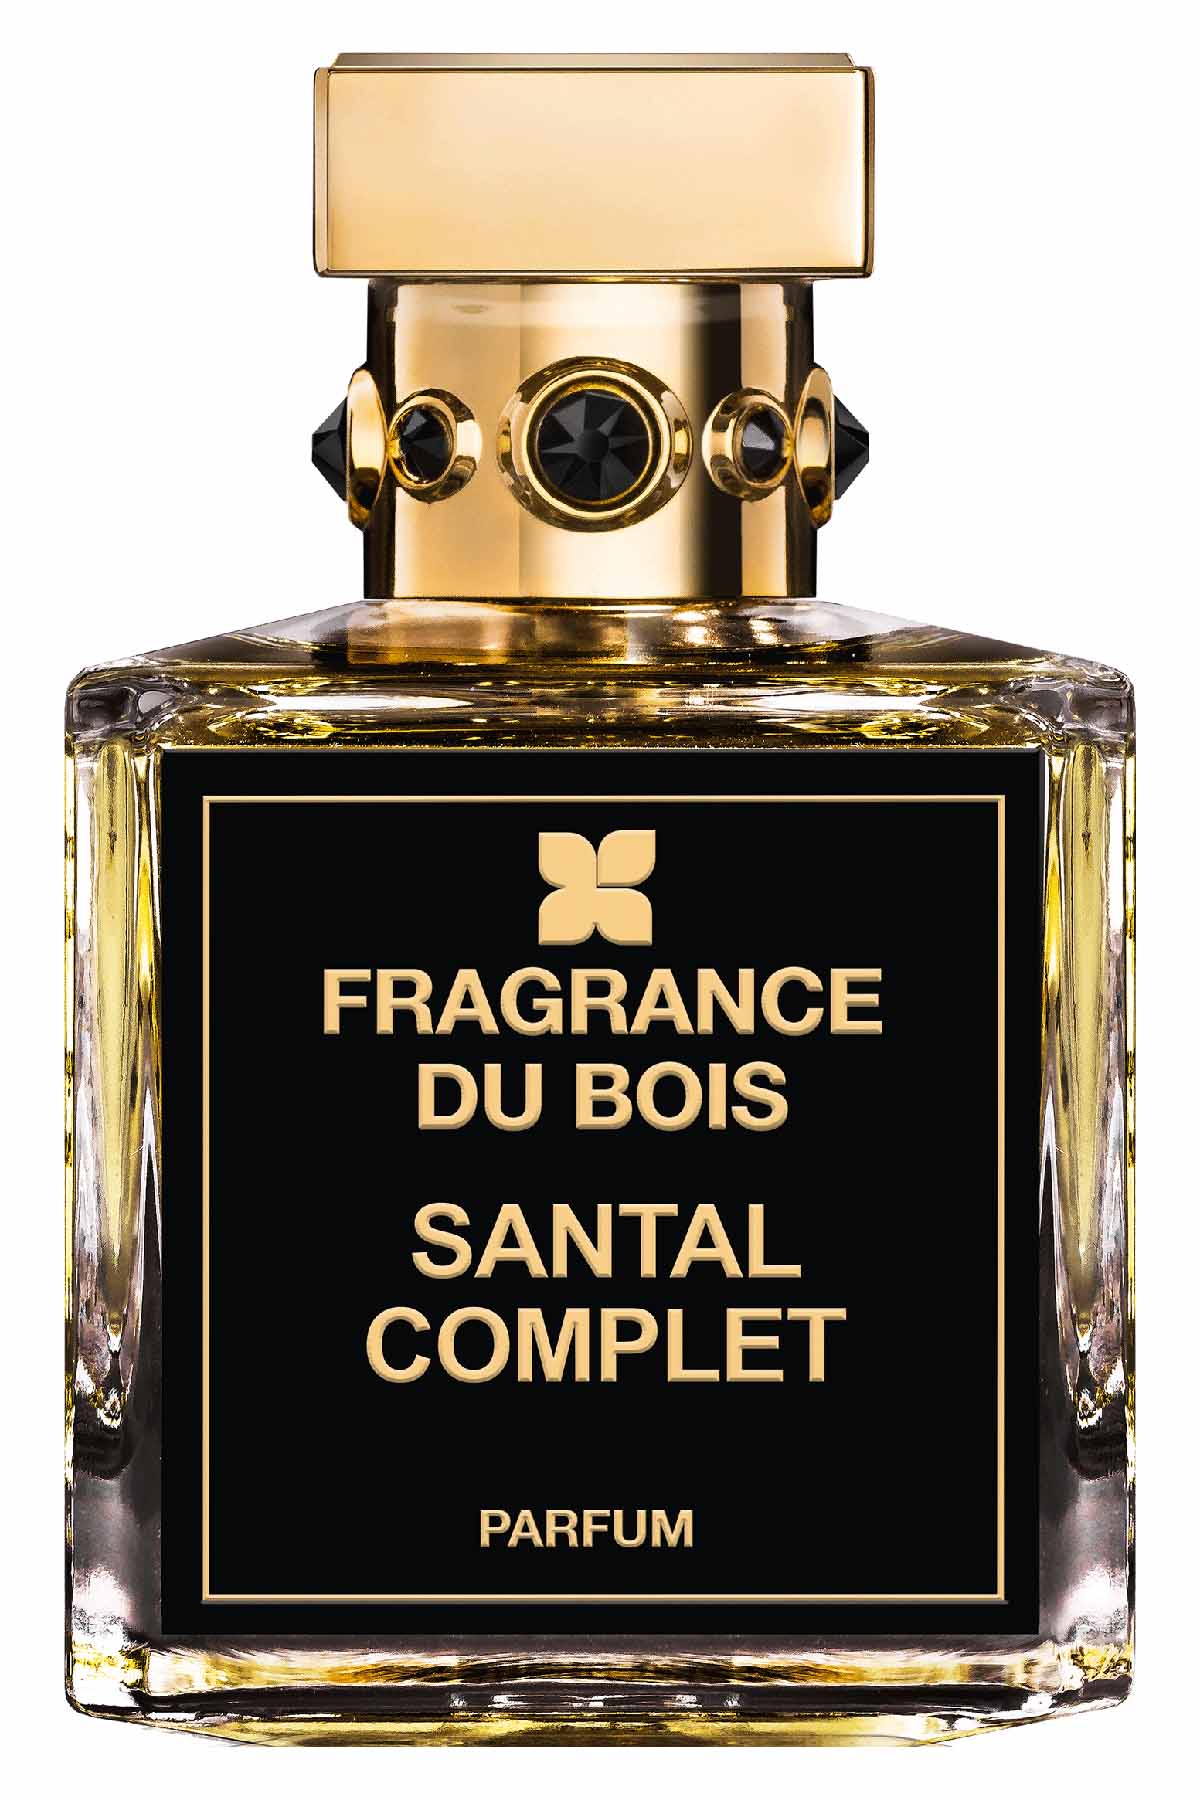 Fragrance Du Bois Santal Complet Parfum